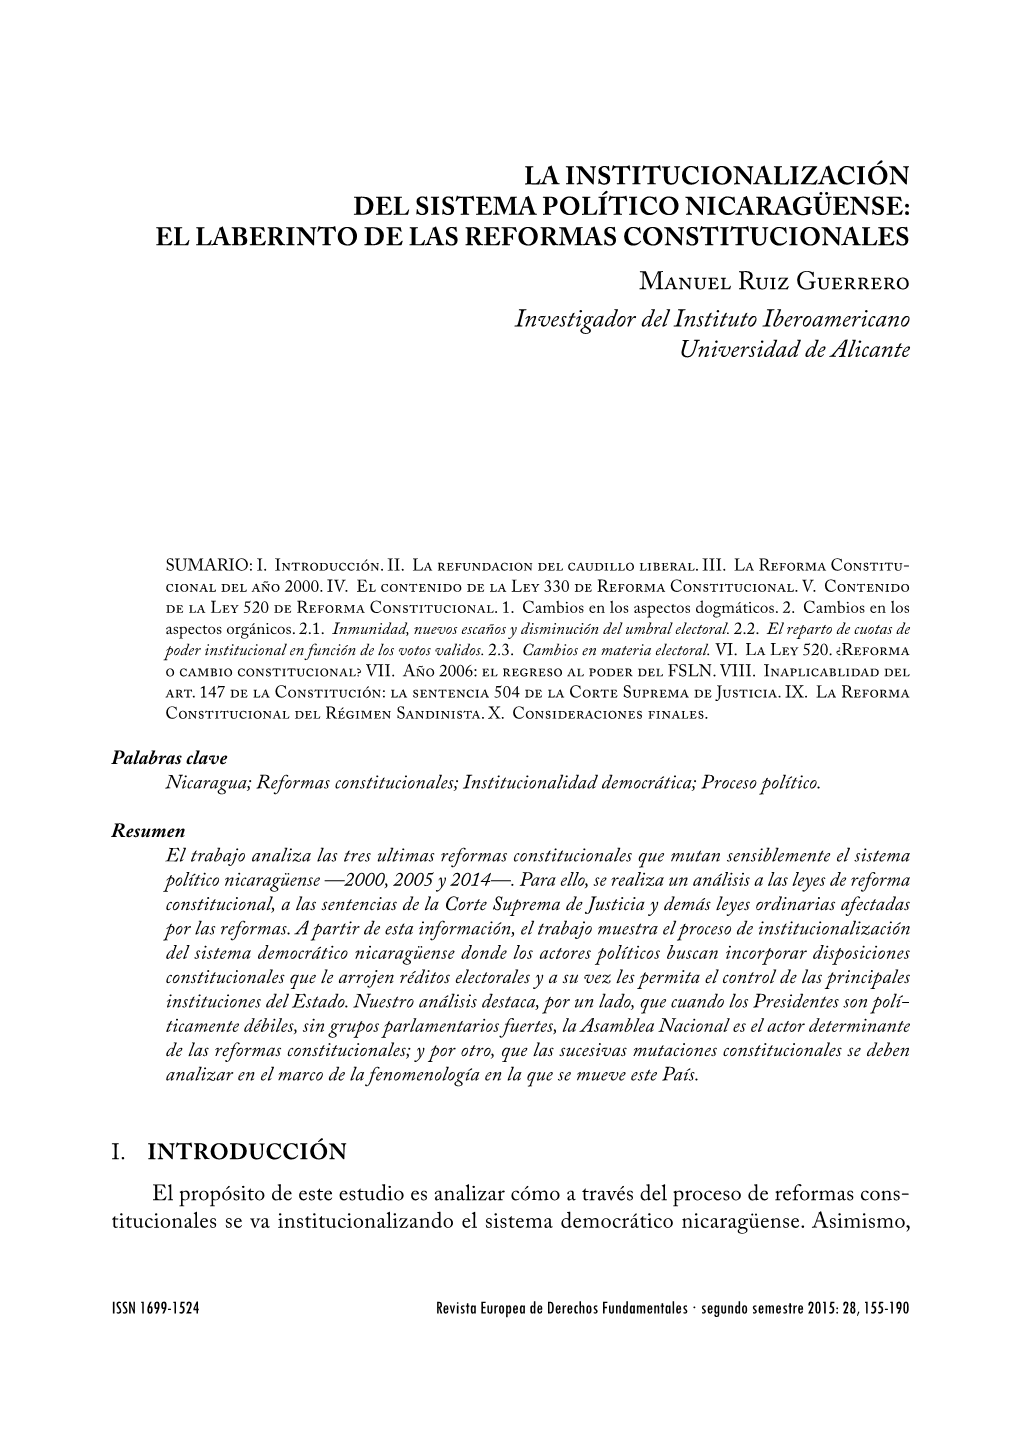 La Institucionalización Del Sistema Político Nicaragüense: El Laberinto De Las Reformas Constitucionales 155